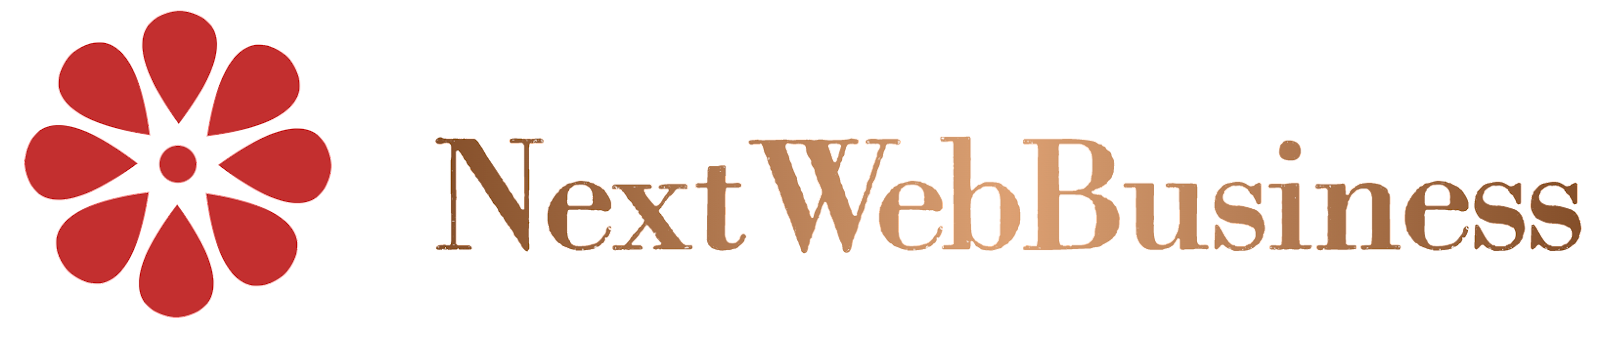 nextwebbusiness.com